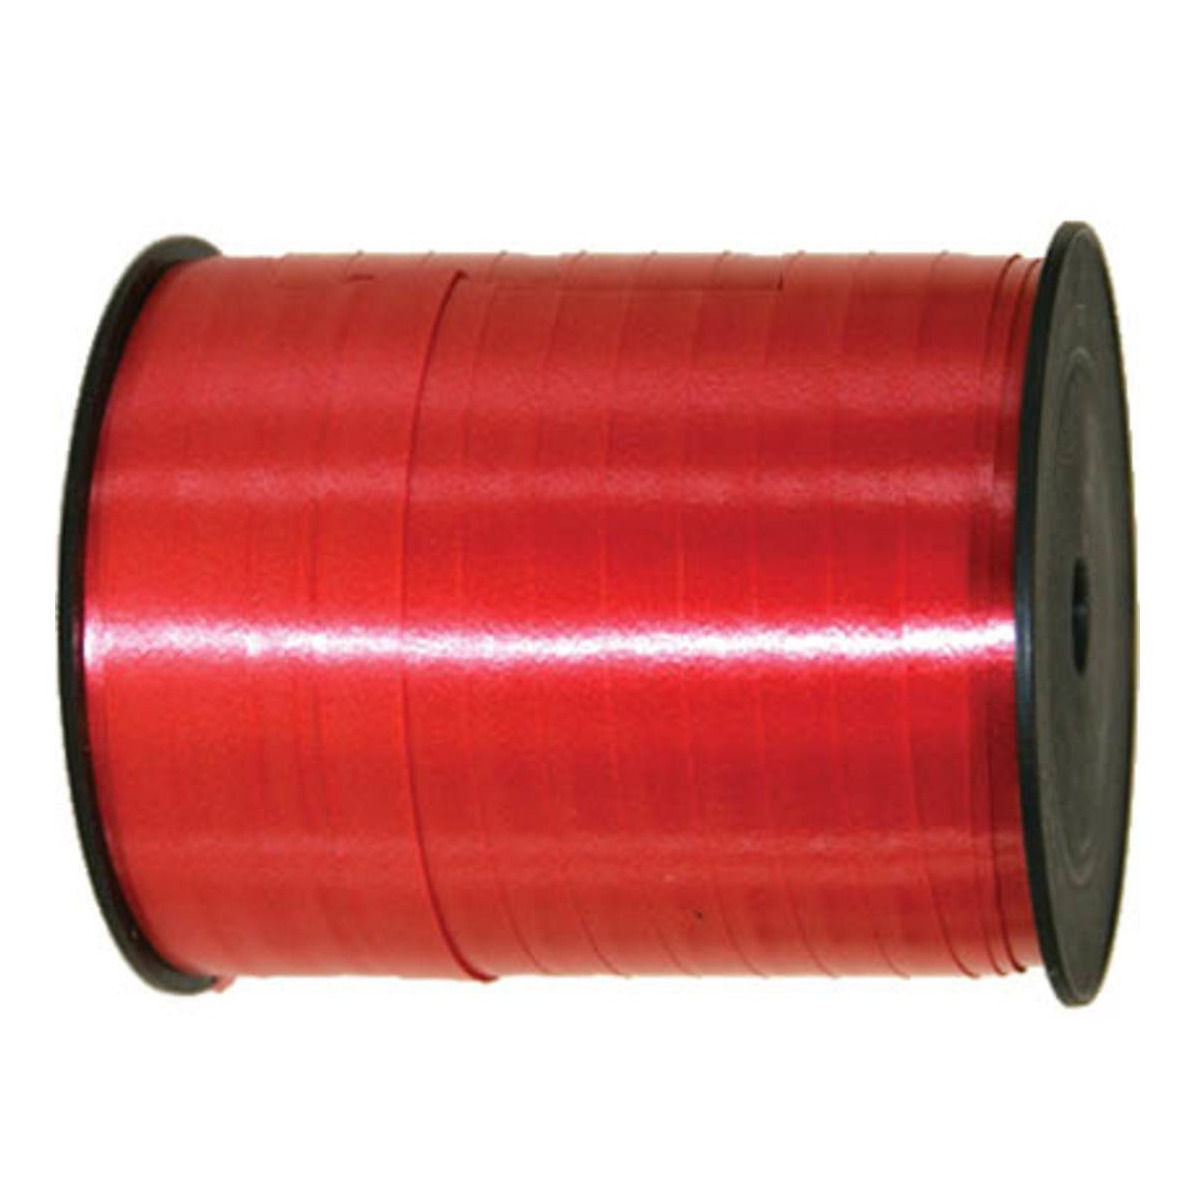 Cadeaulint/sierlint in de kleur rood 5 mm x 500 meter